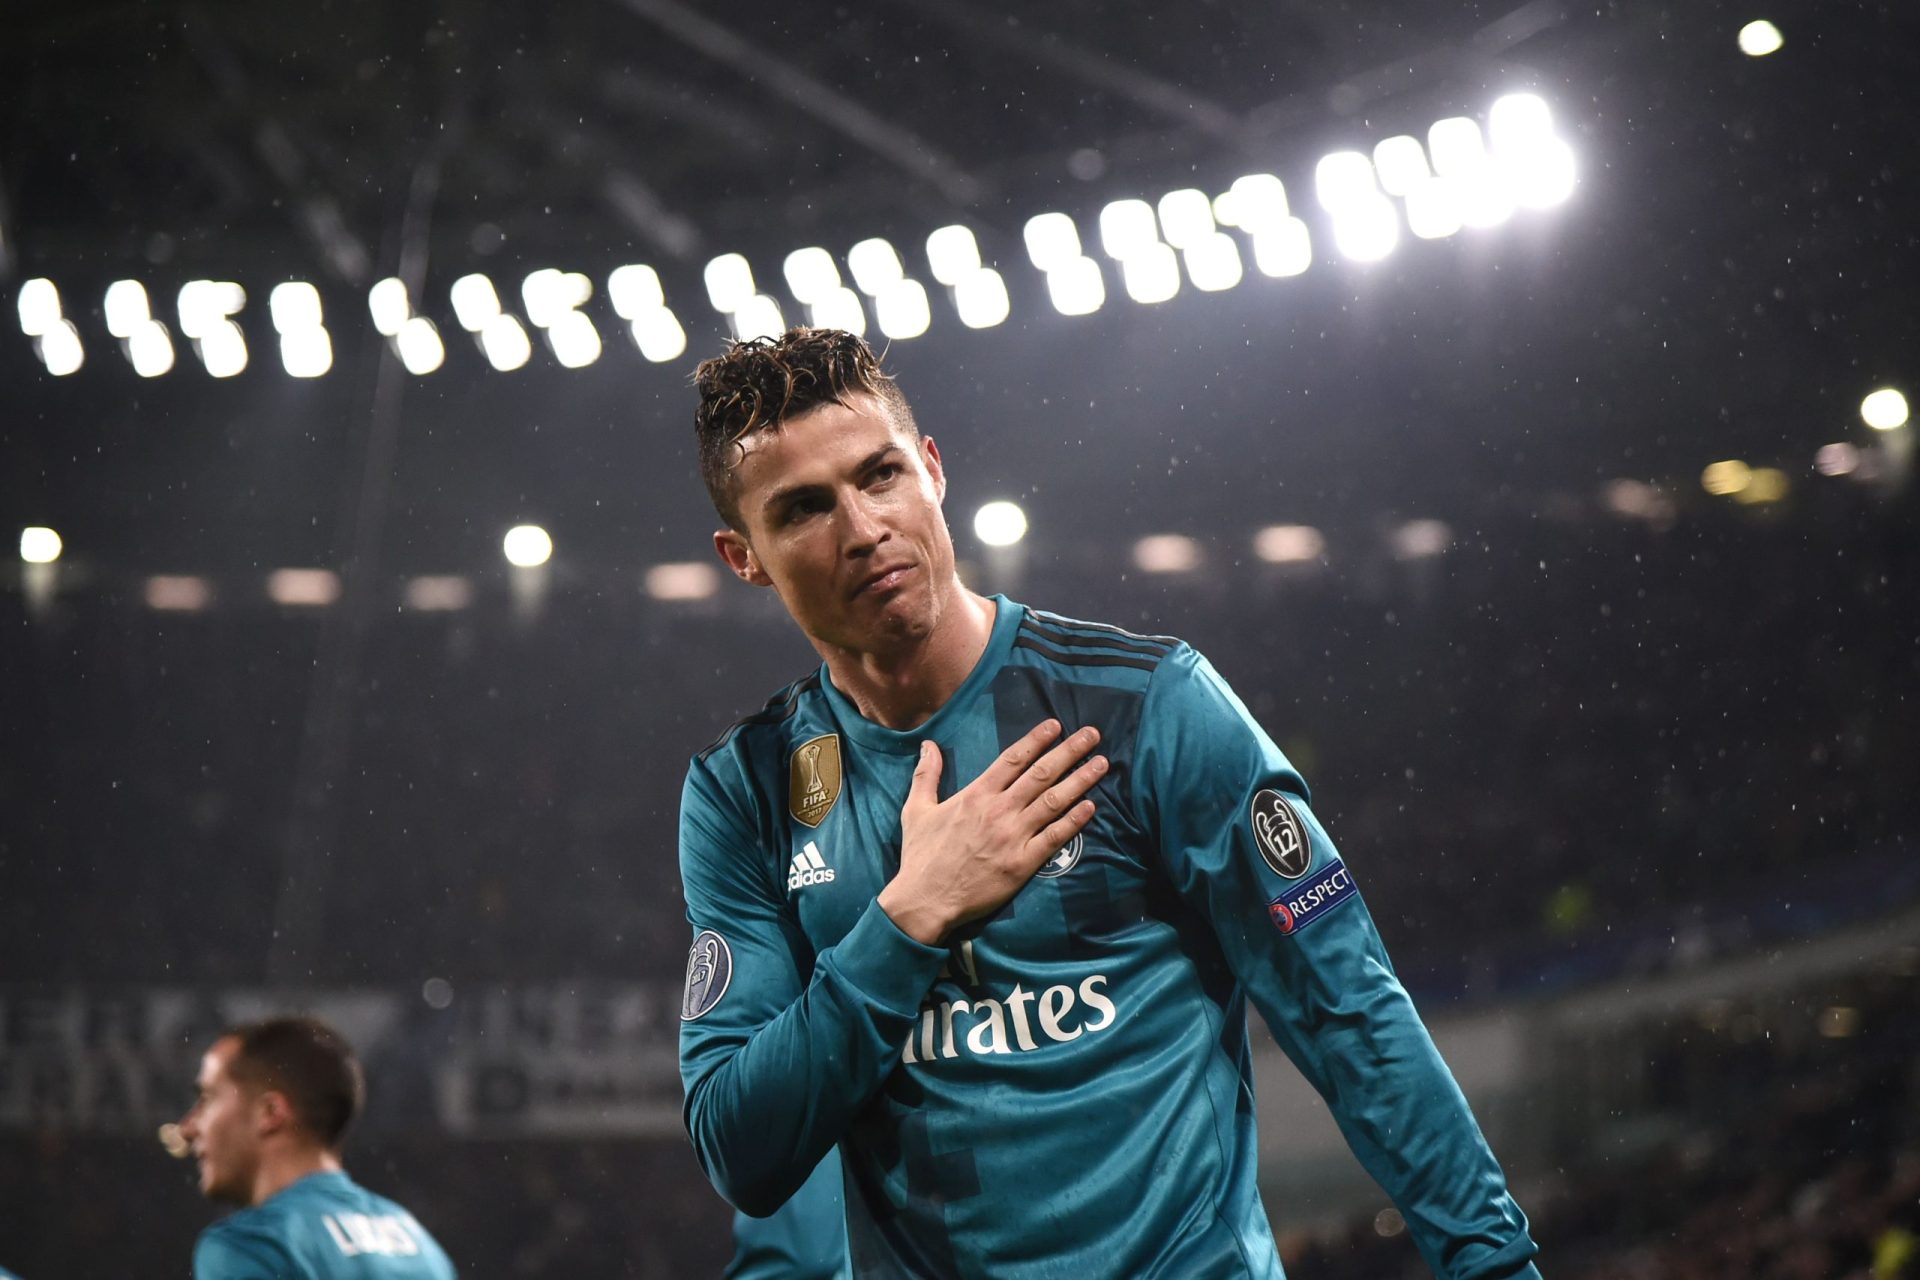 Veja e reveja o incrível golo de Ronaldo | VÍDEO